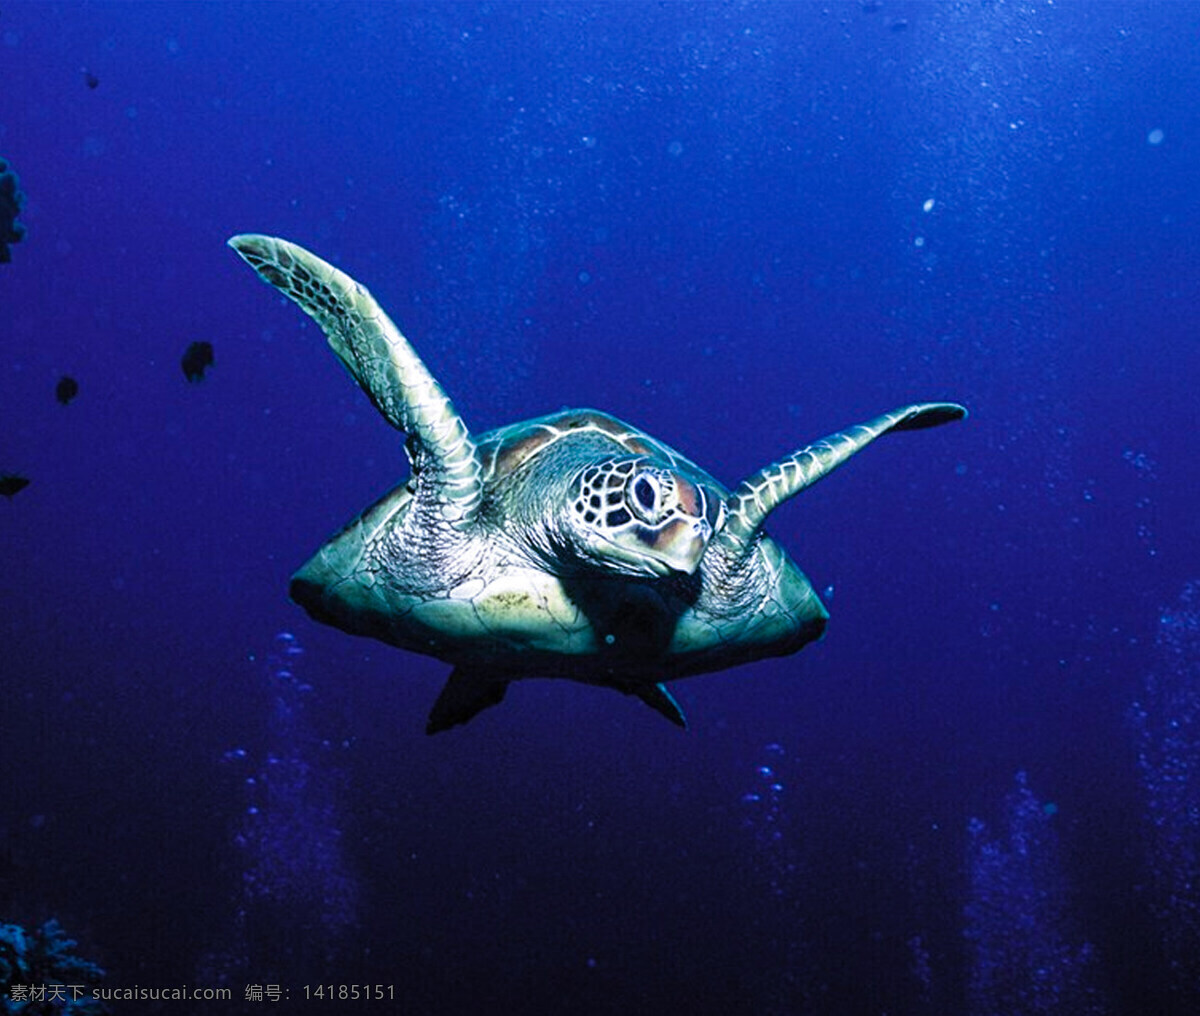 海龟 海洋世界 海底世界 海洋生物 海洋动物 旅游摄影 自然风景